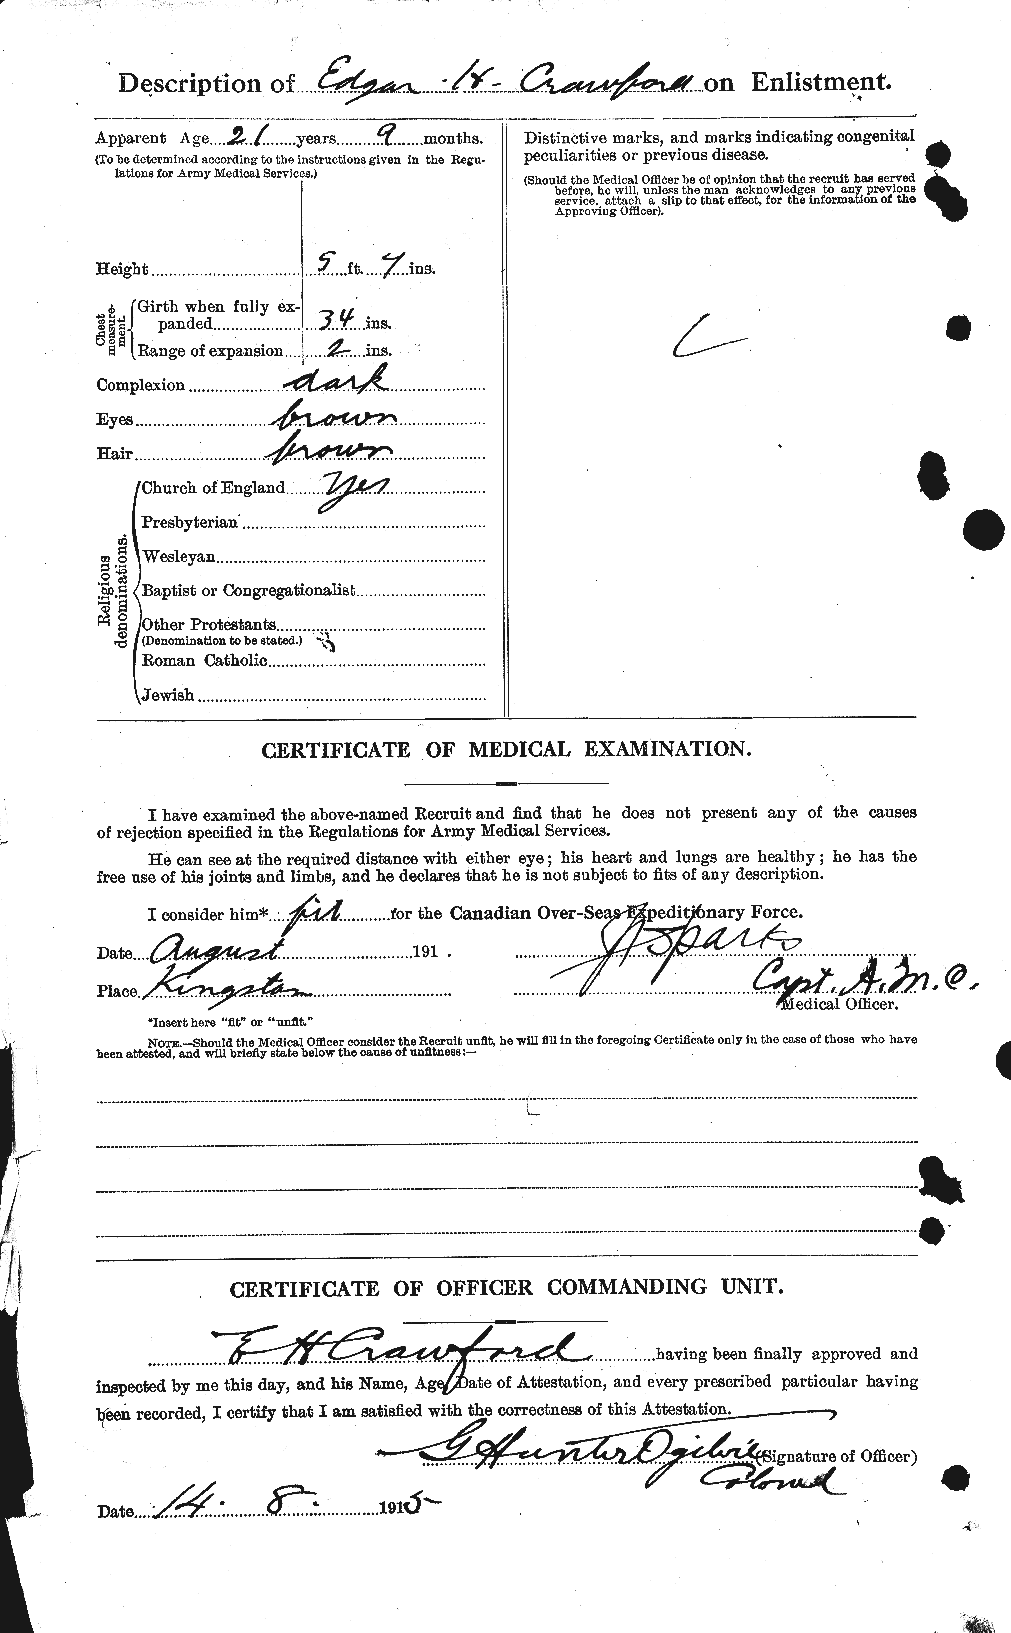 Dossiers du Personnel de la Première Guerre mondiale - CEC 060806b